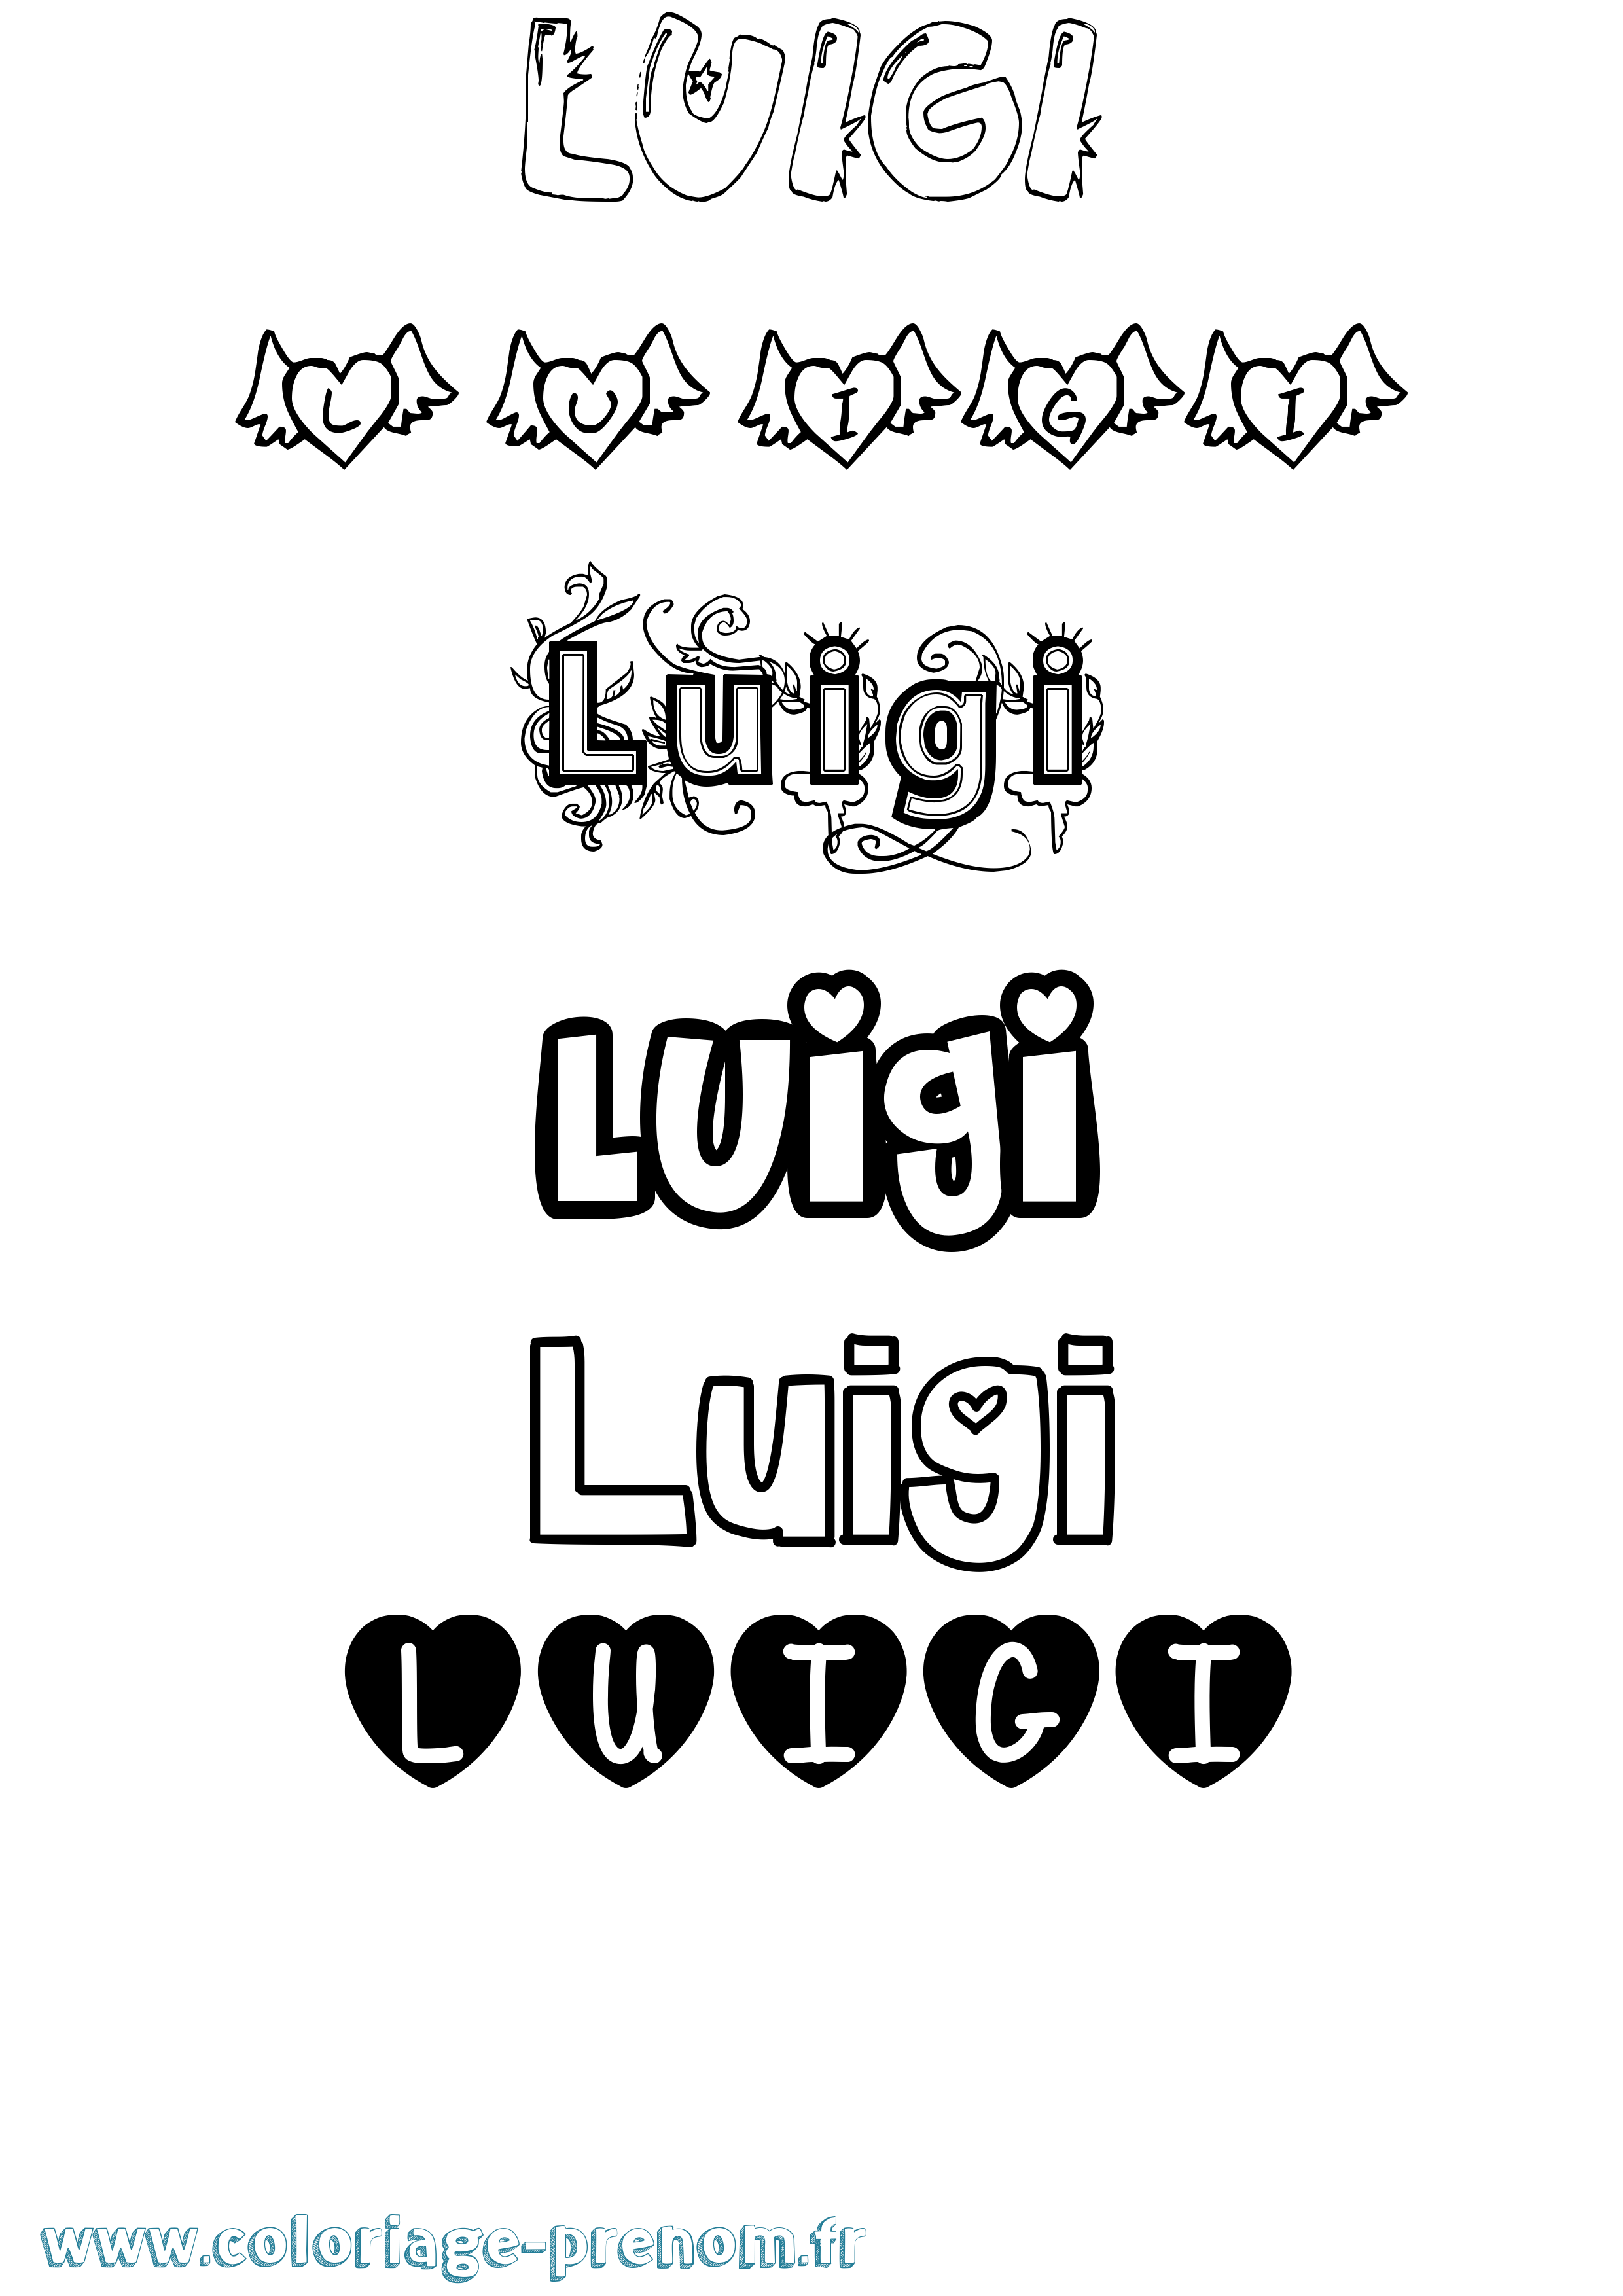 Coloriage prénom Luigi Girly